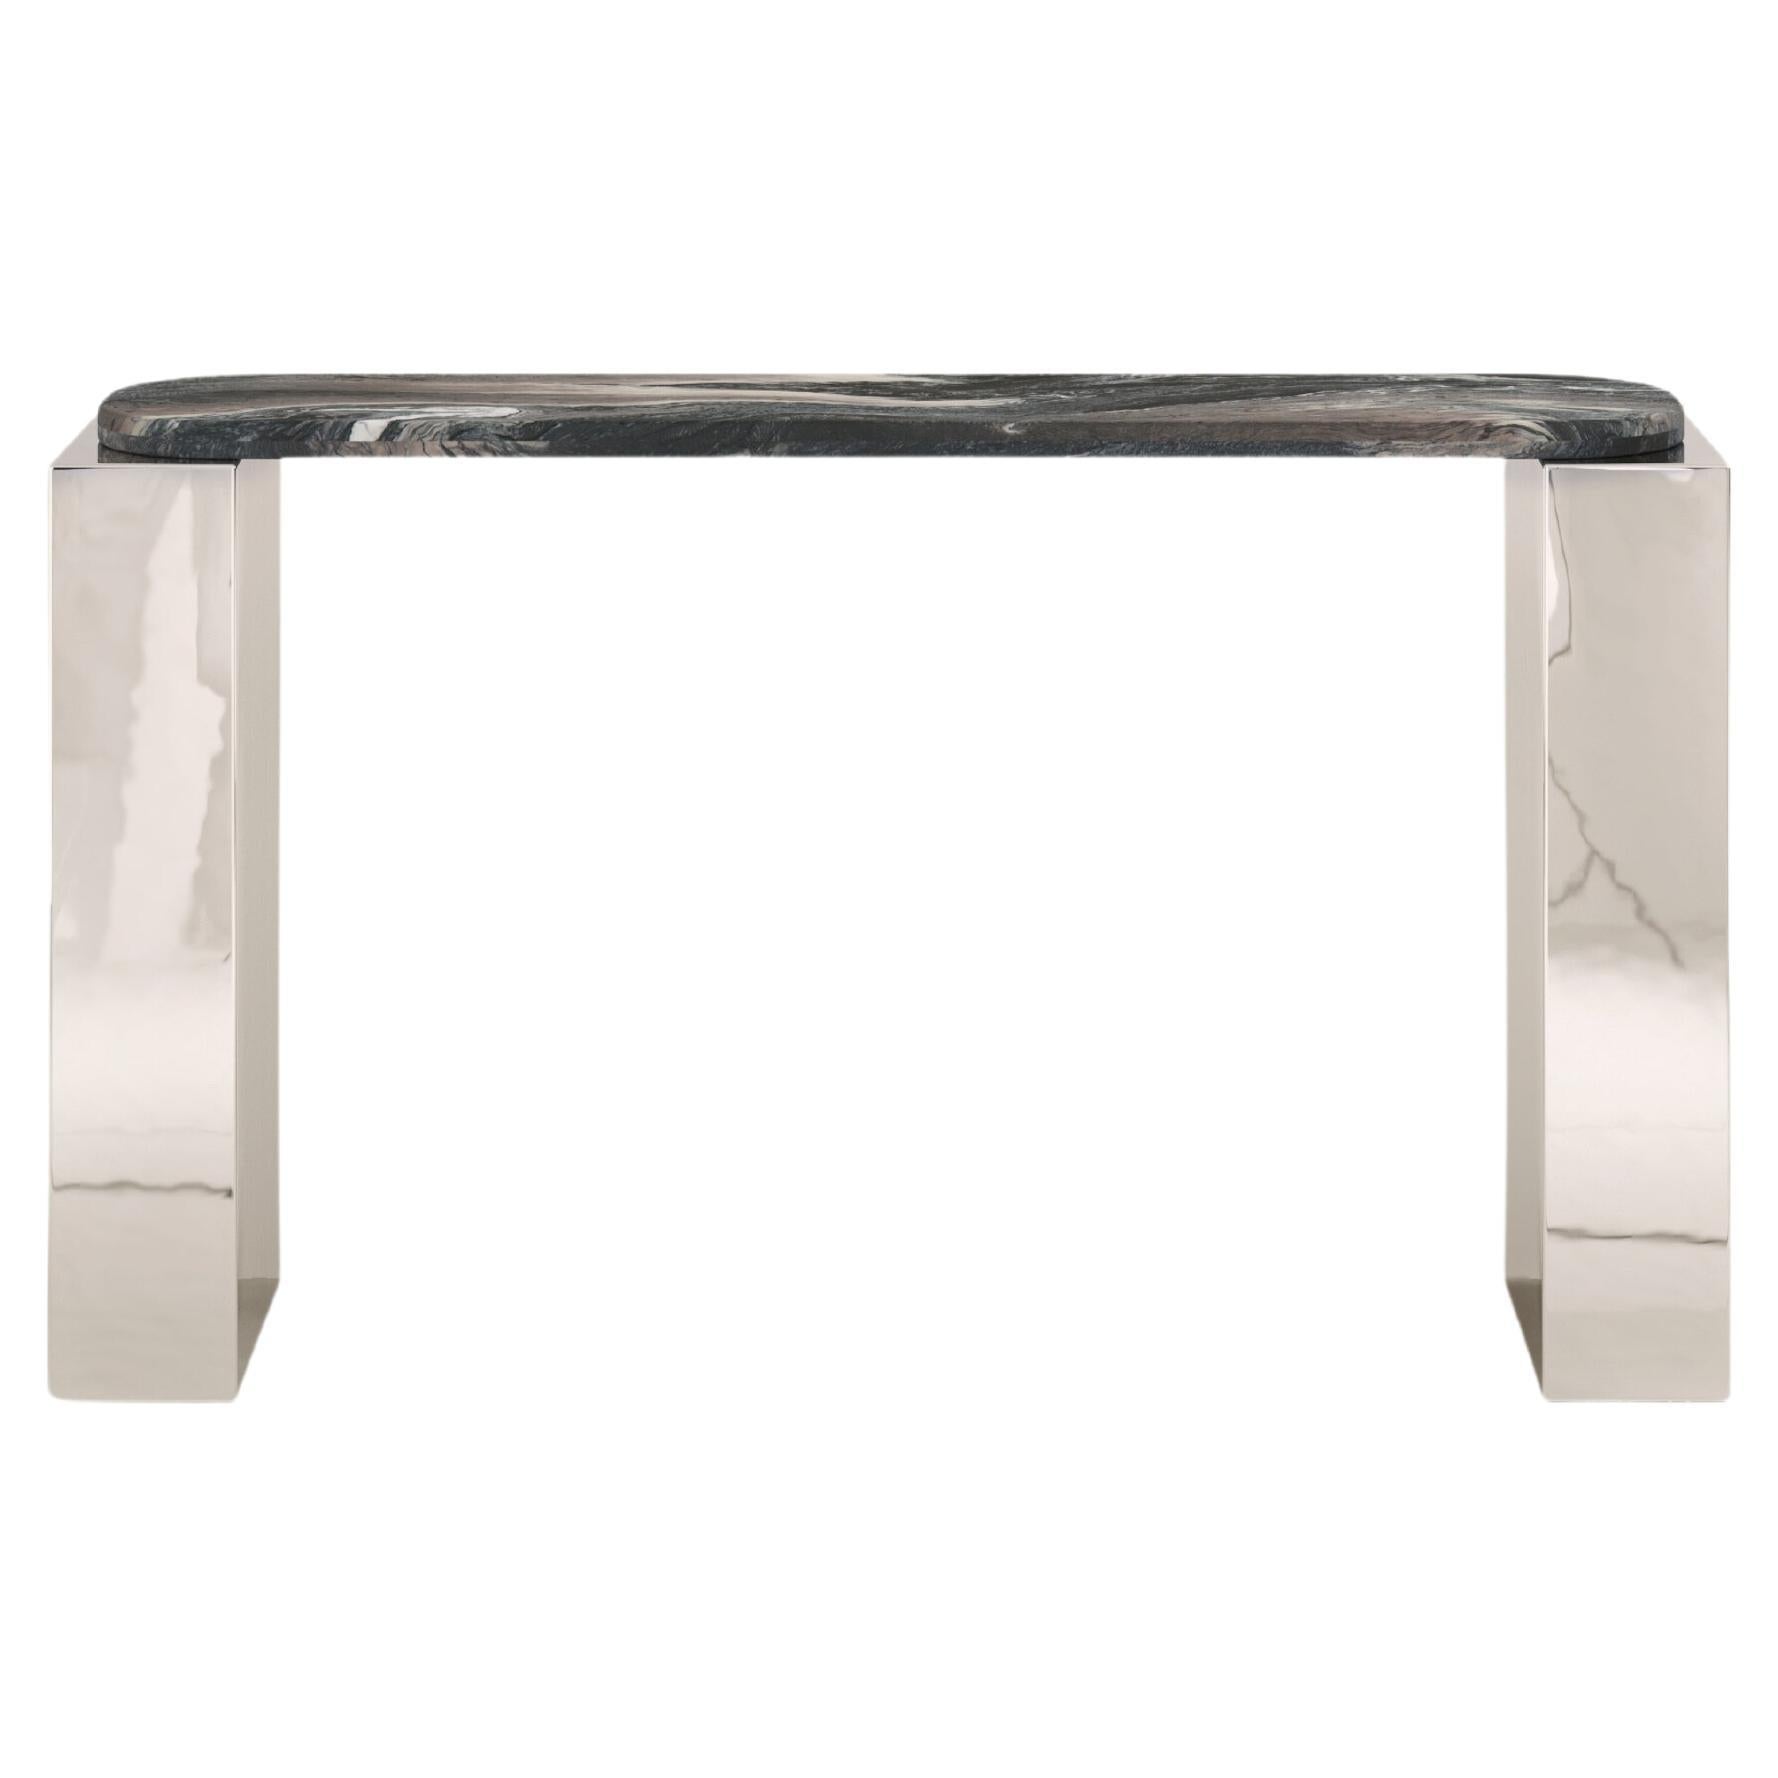 FORM(LA) Cubo Console Table 62”L x 17”W x 36”H Ondulato Marble & Chrome For Sale